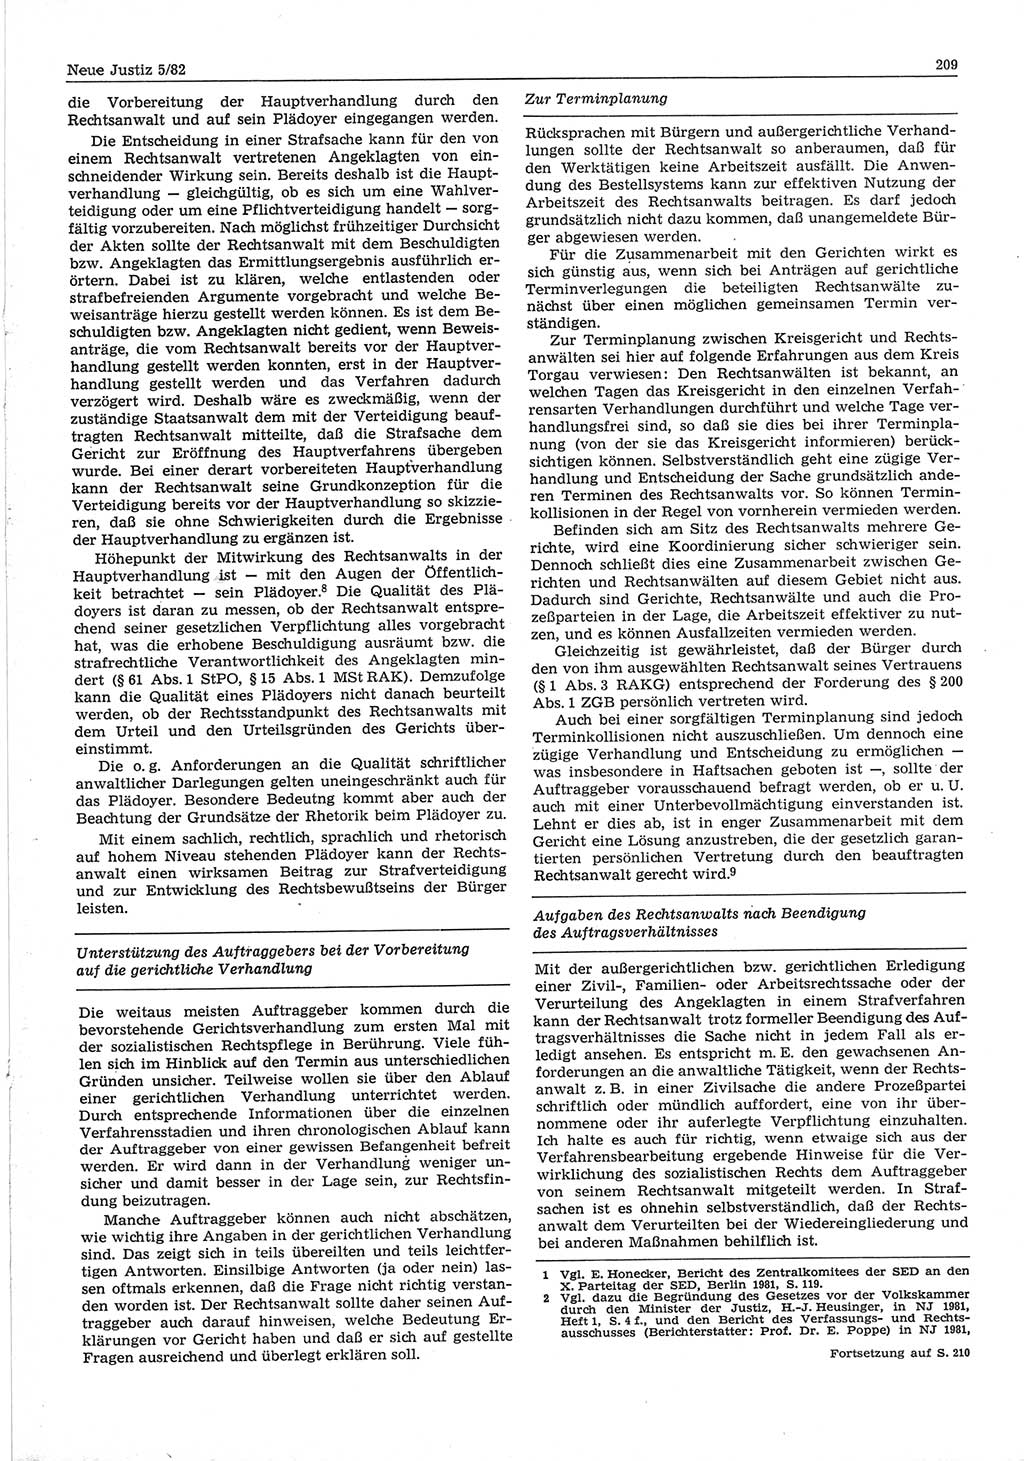 Neue Justiz (NJ), Zeitschrift für sozialistisches Recht und Gesetzlichkeit [Deutsche Demokratische Republik (DDR)], 36. Jahrgang 1982, Seite 209 (NJ DDR 1982, S. 209)